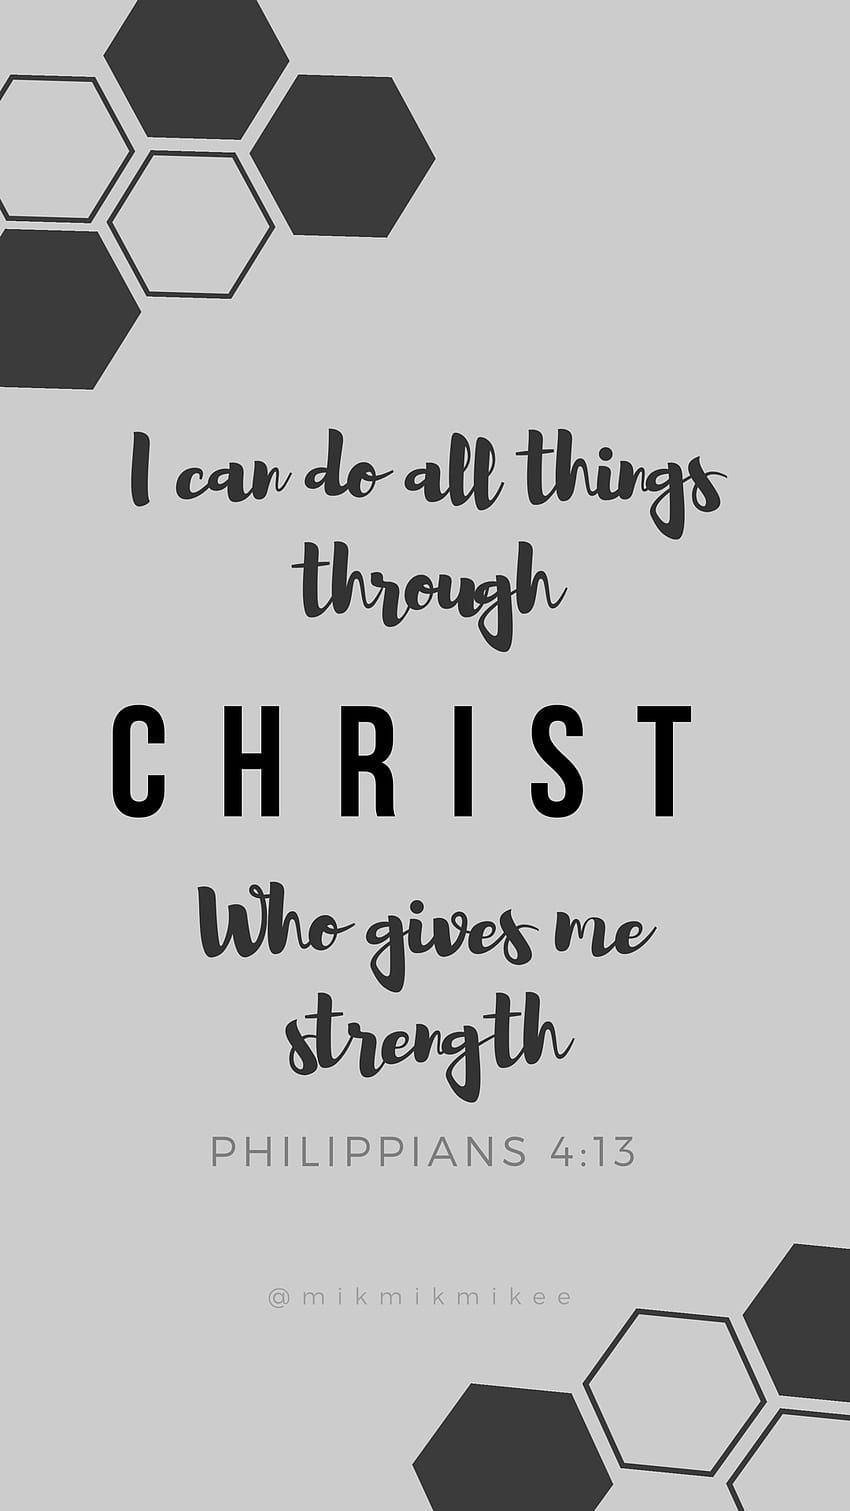 私は、私に力を与えてくださるキリストを通して、すべてのことを行うことができます, ピリピ人への手紙 4:13 HD電話の壁紙